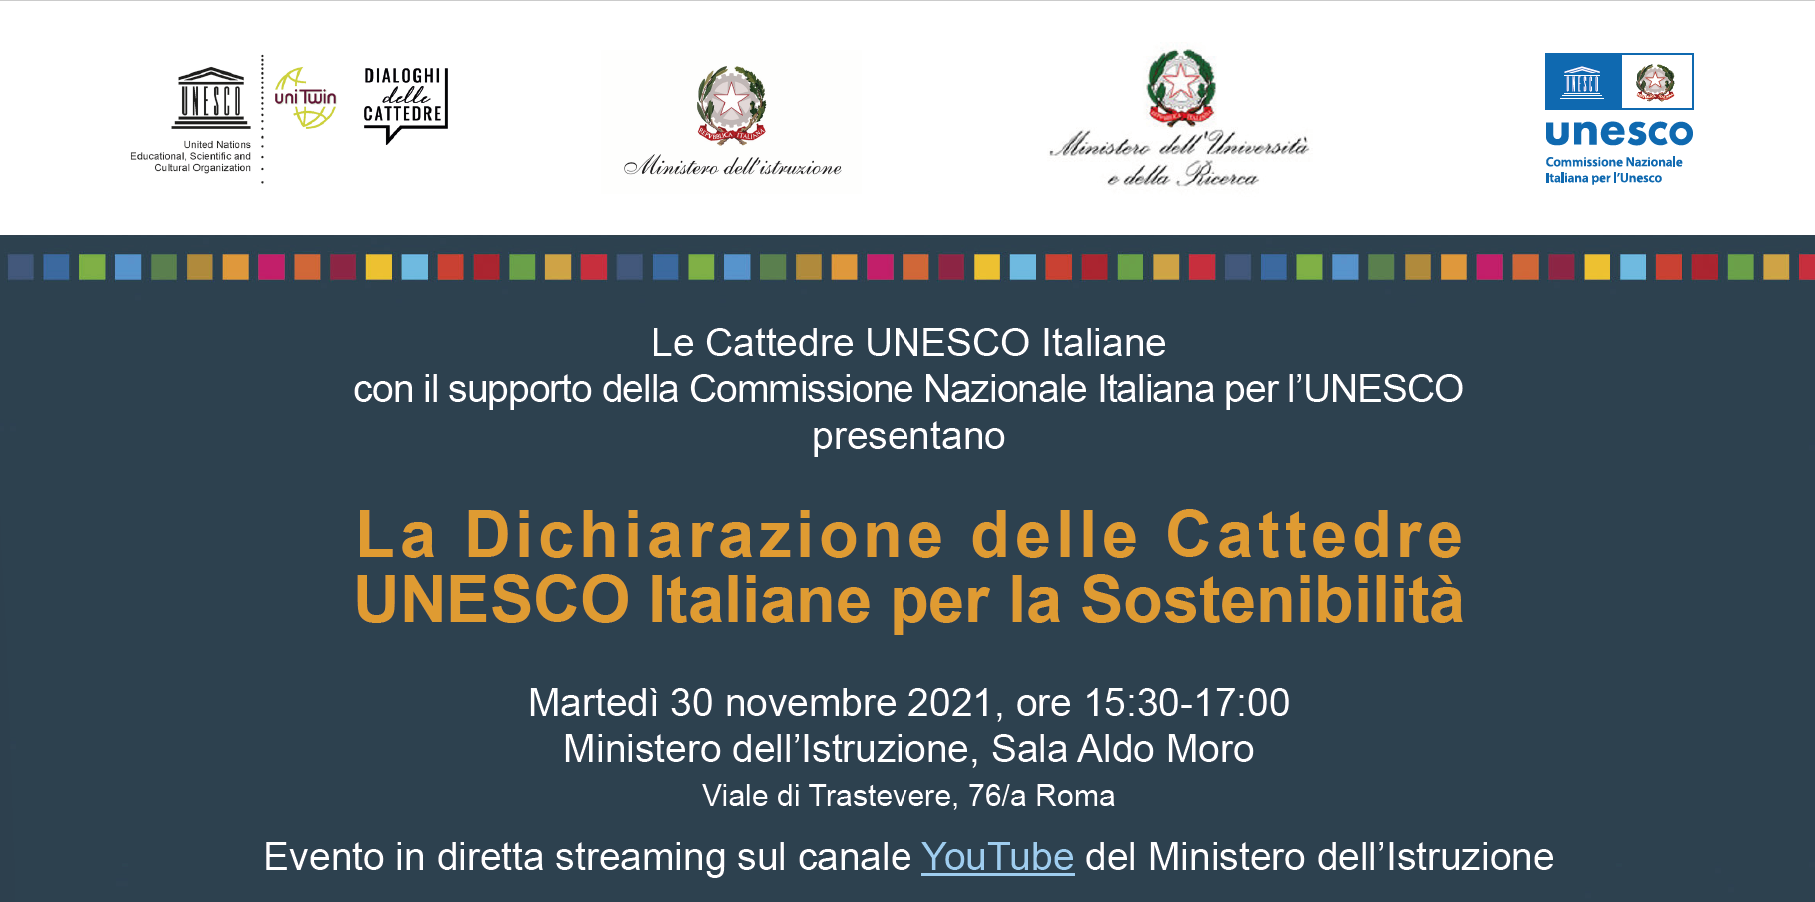 La Dichiarazione delle Cattedre UNESCO Italiane per la Sostenibilità